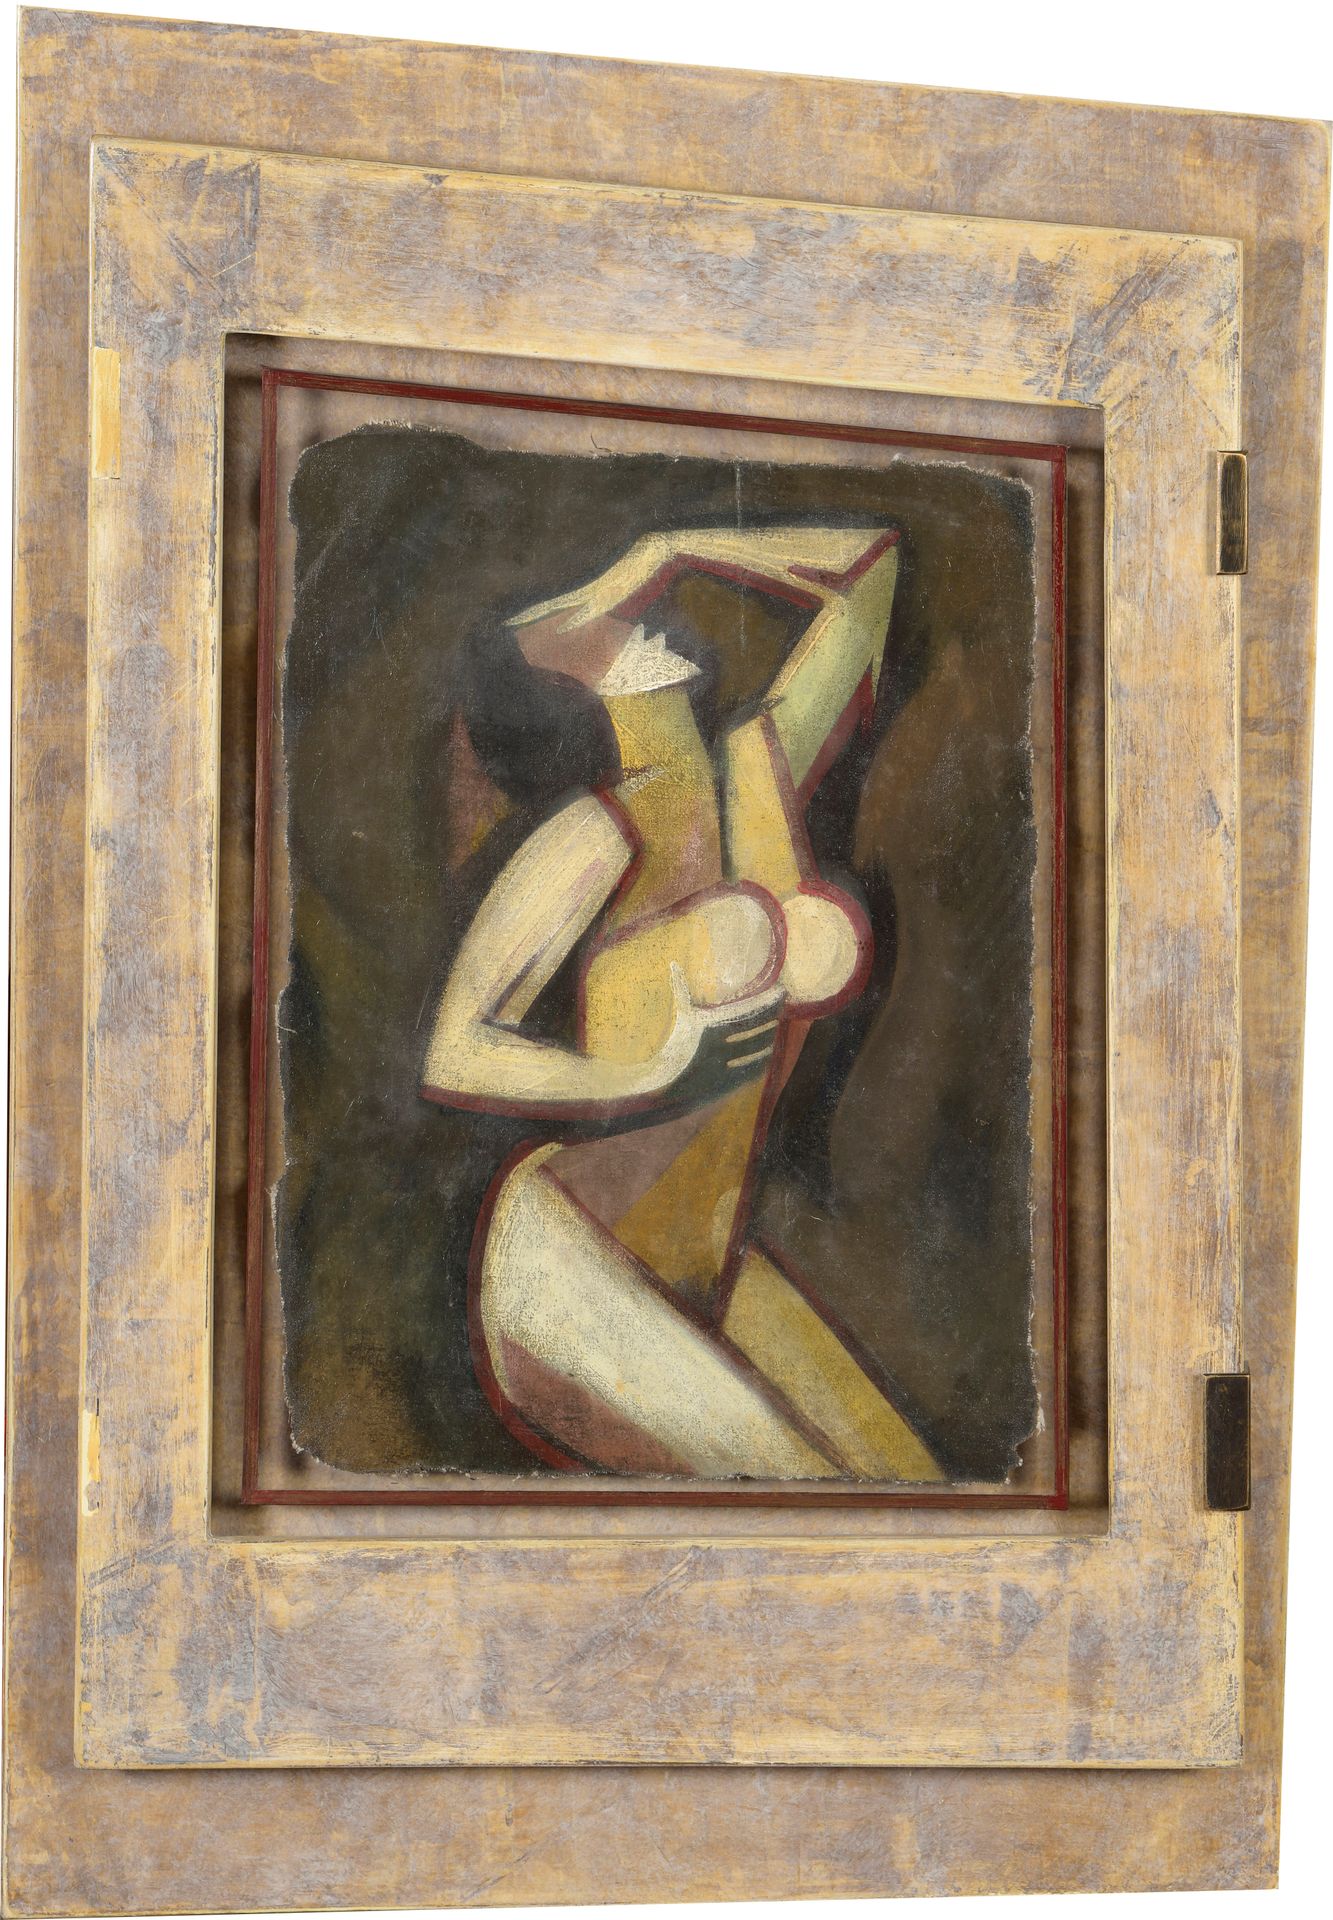 Null 20世纪的学校

立体派裸体

布面油画（无框架）。可能是零碎的。

33 x 24 厘米